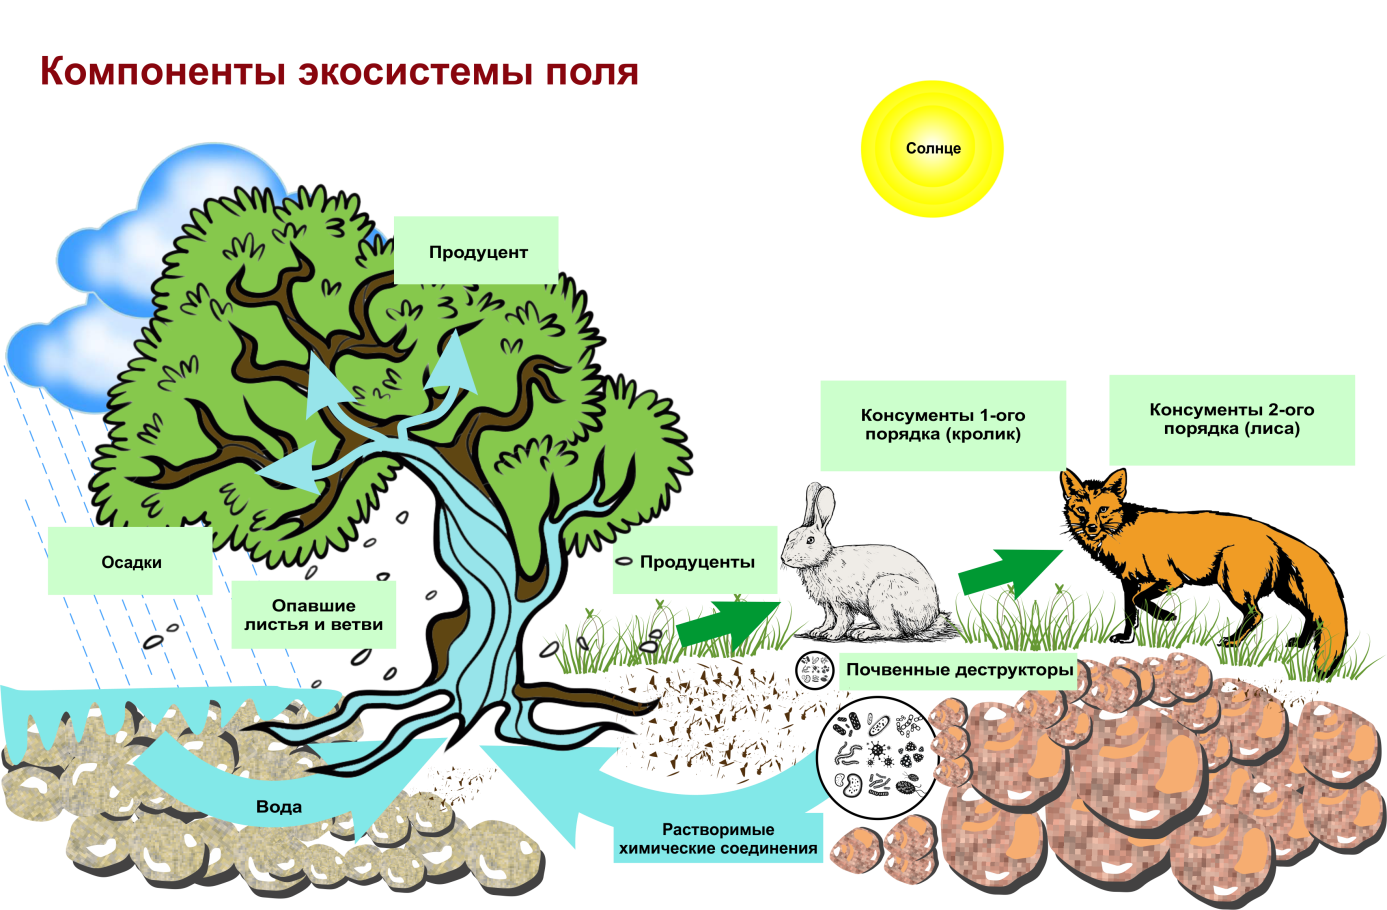 Цикле среда обитания. Структура биогеоценоза и экосистемы. Схема трофической структуры биоценоза широколиственного леса. Строение биогеоценоза экосистемы. Схема состава компонентов экосистемы.